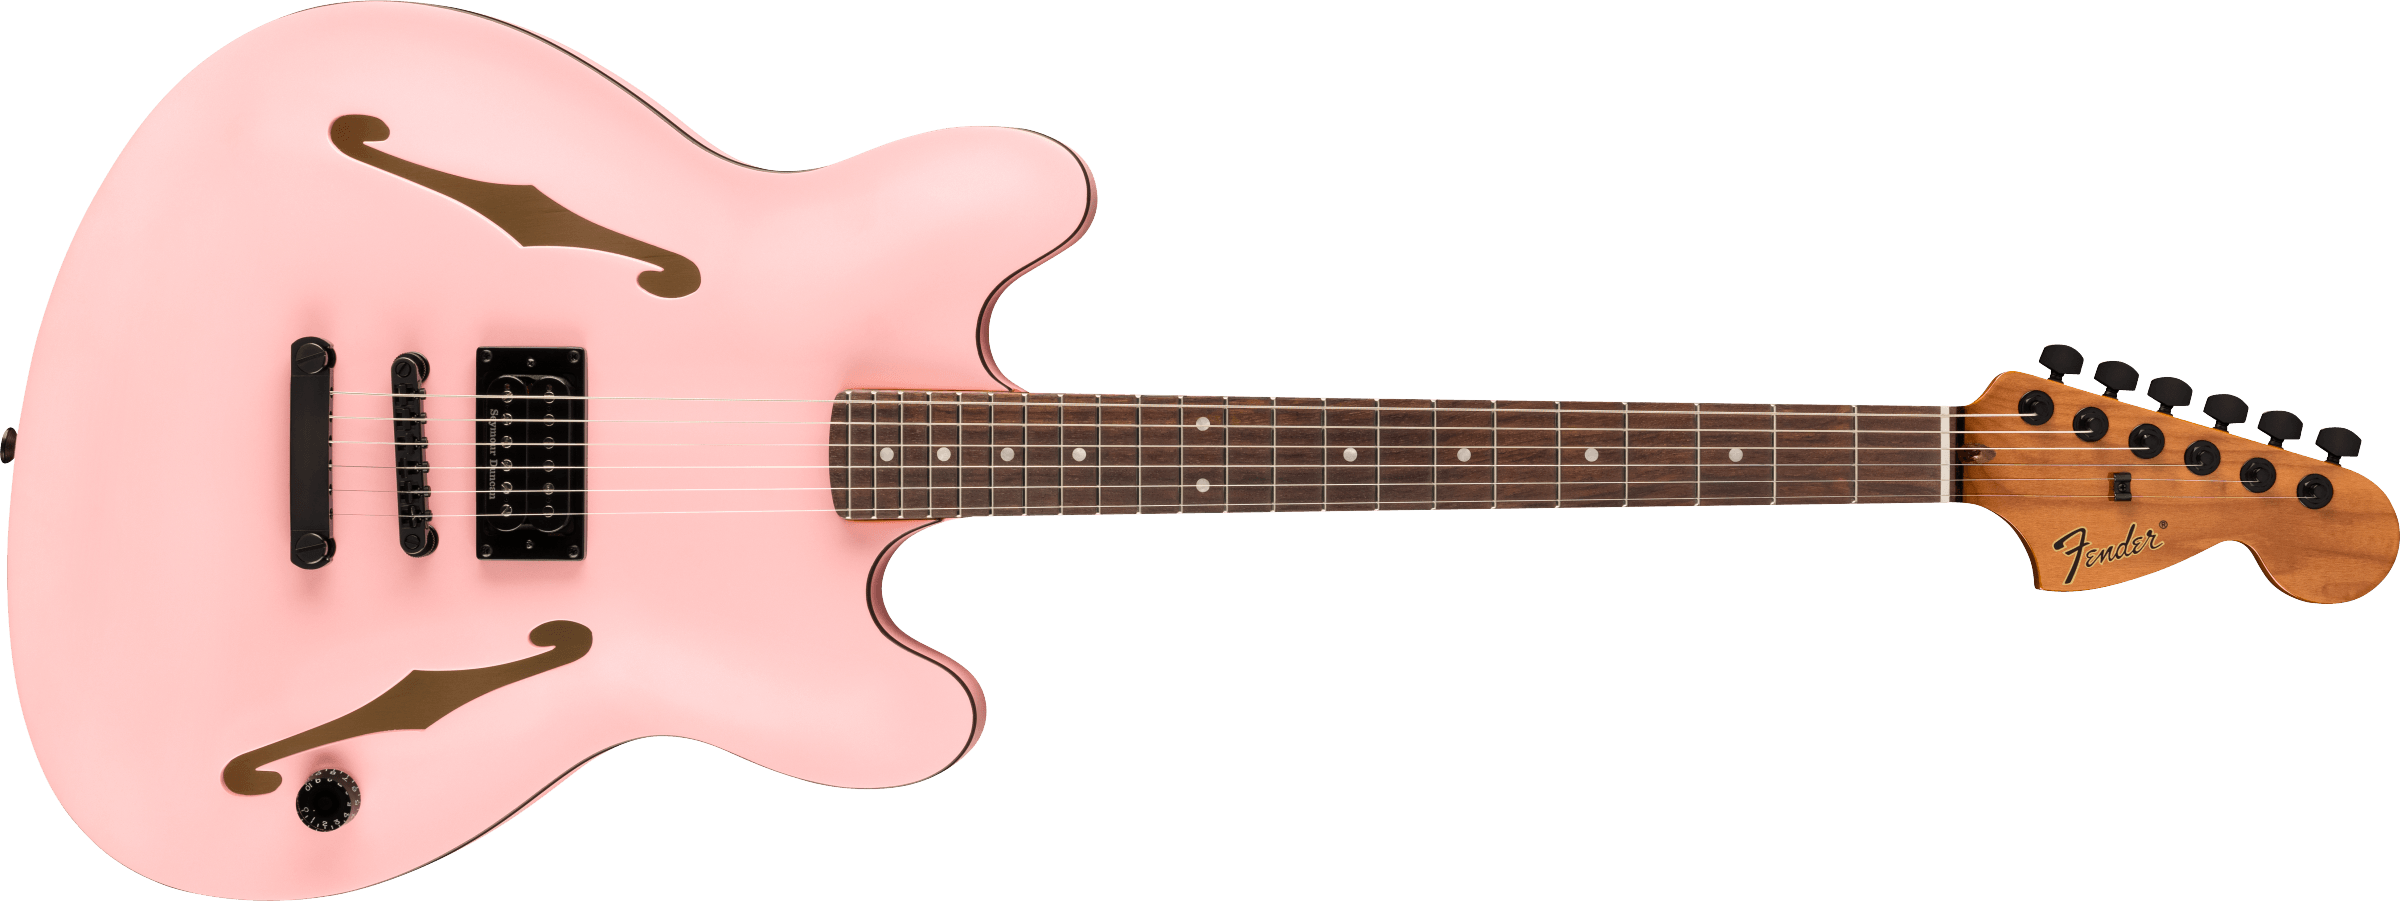 Fender Tom DeLonge Starcaster Rosewood Fingerboard, Black Hardware, Satin Shell Pink 0262370556